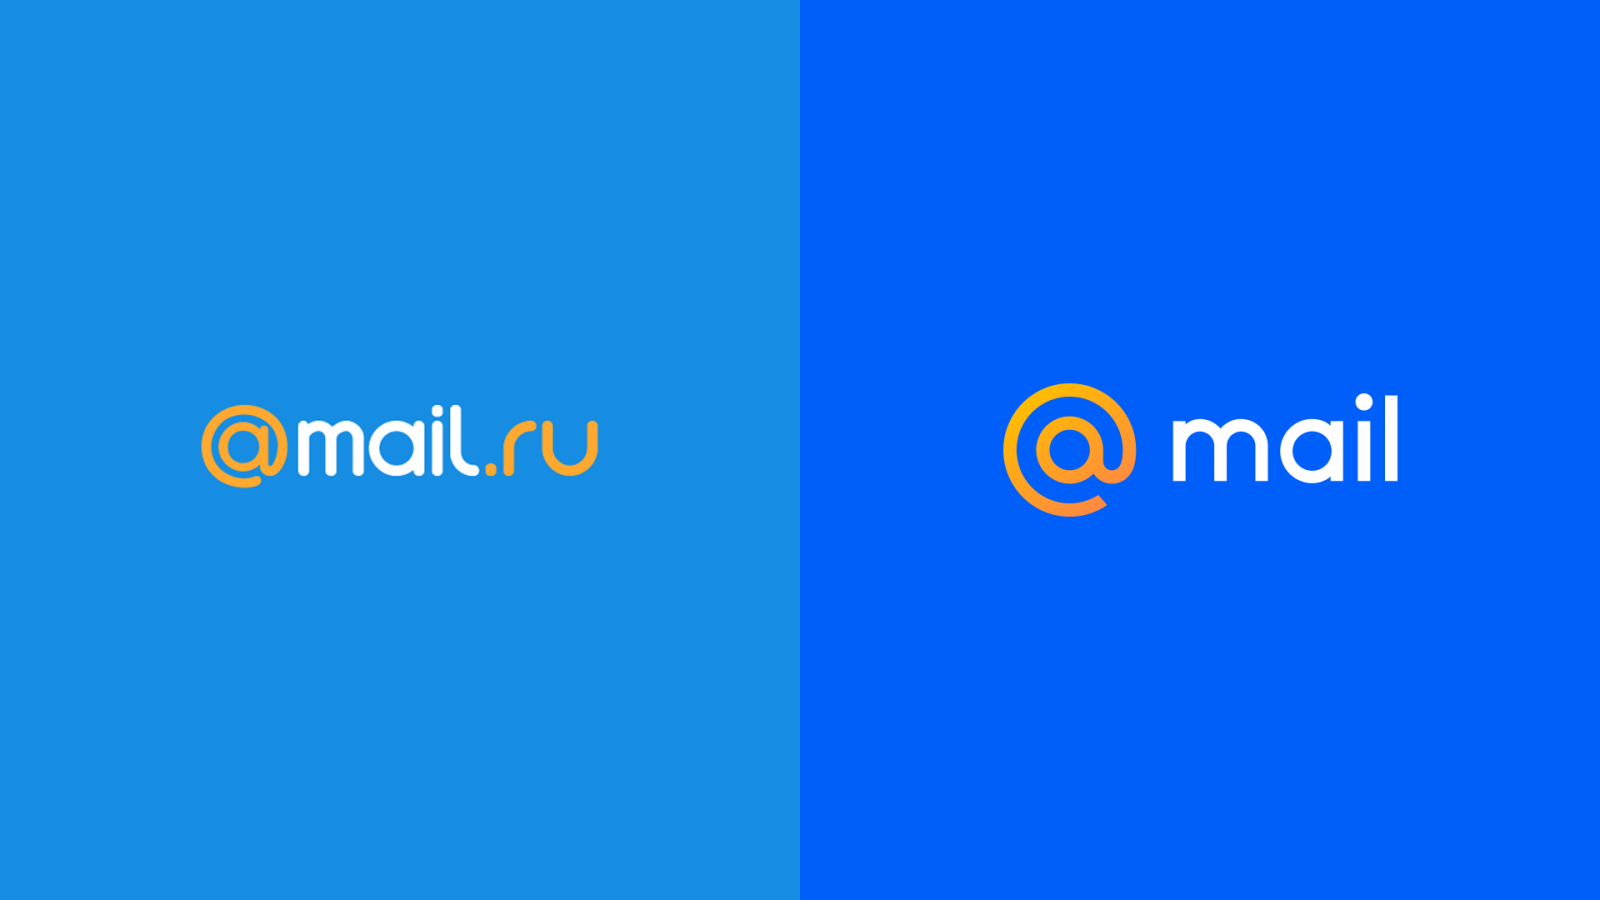 Mi mail ru. Mail. Почта майл. Mail.ru лого. Логотип почты мейл.